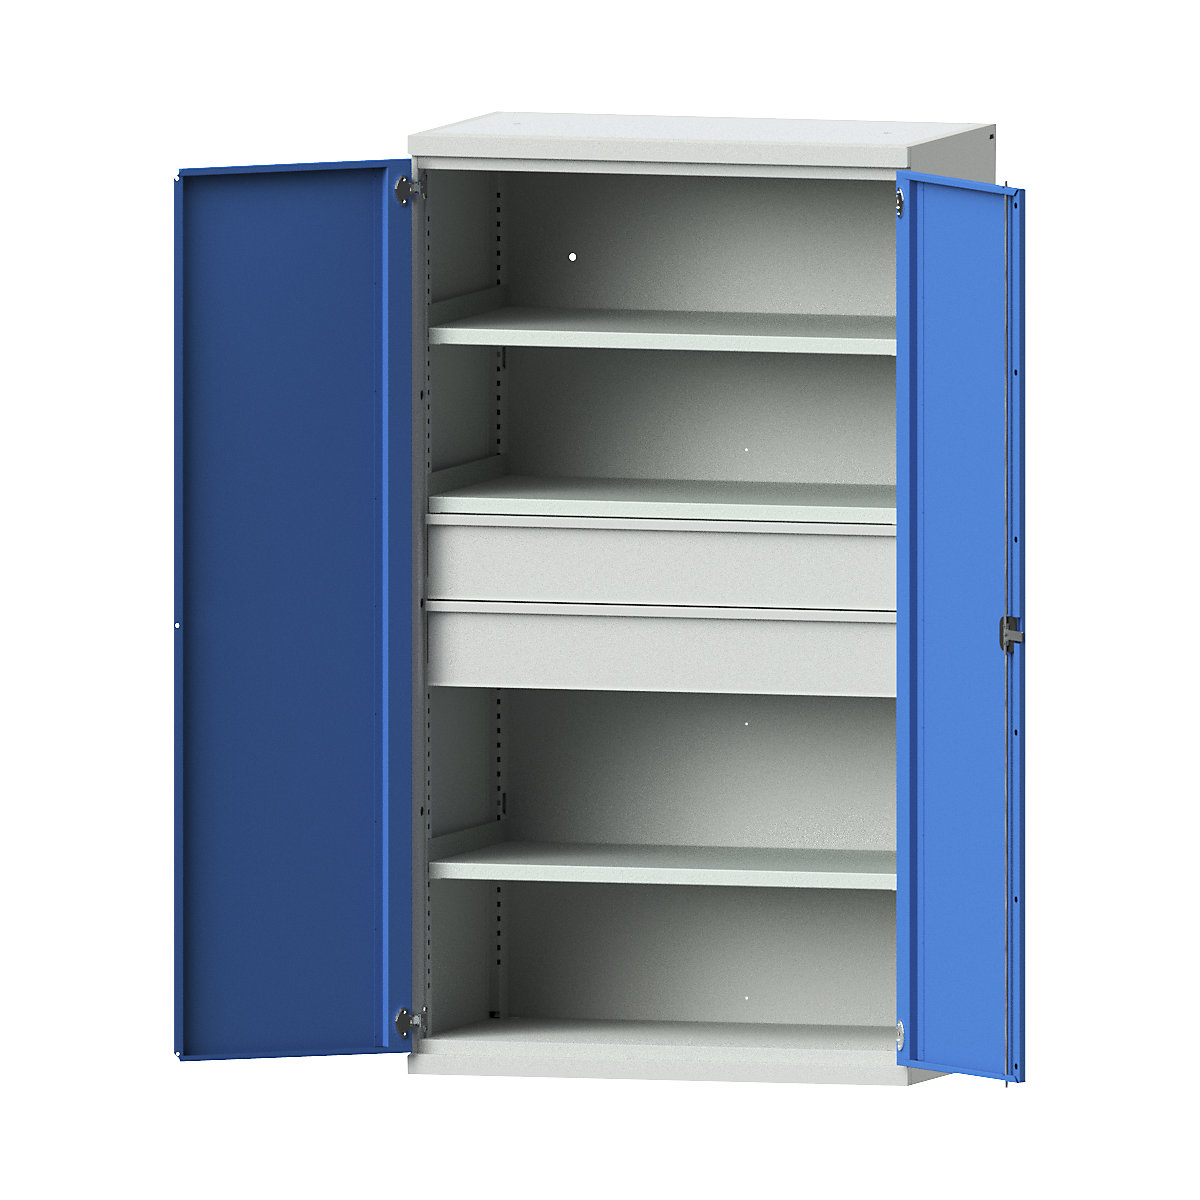 Heavy duty cupboard made of steel – eurokraft pro